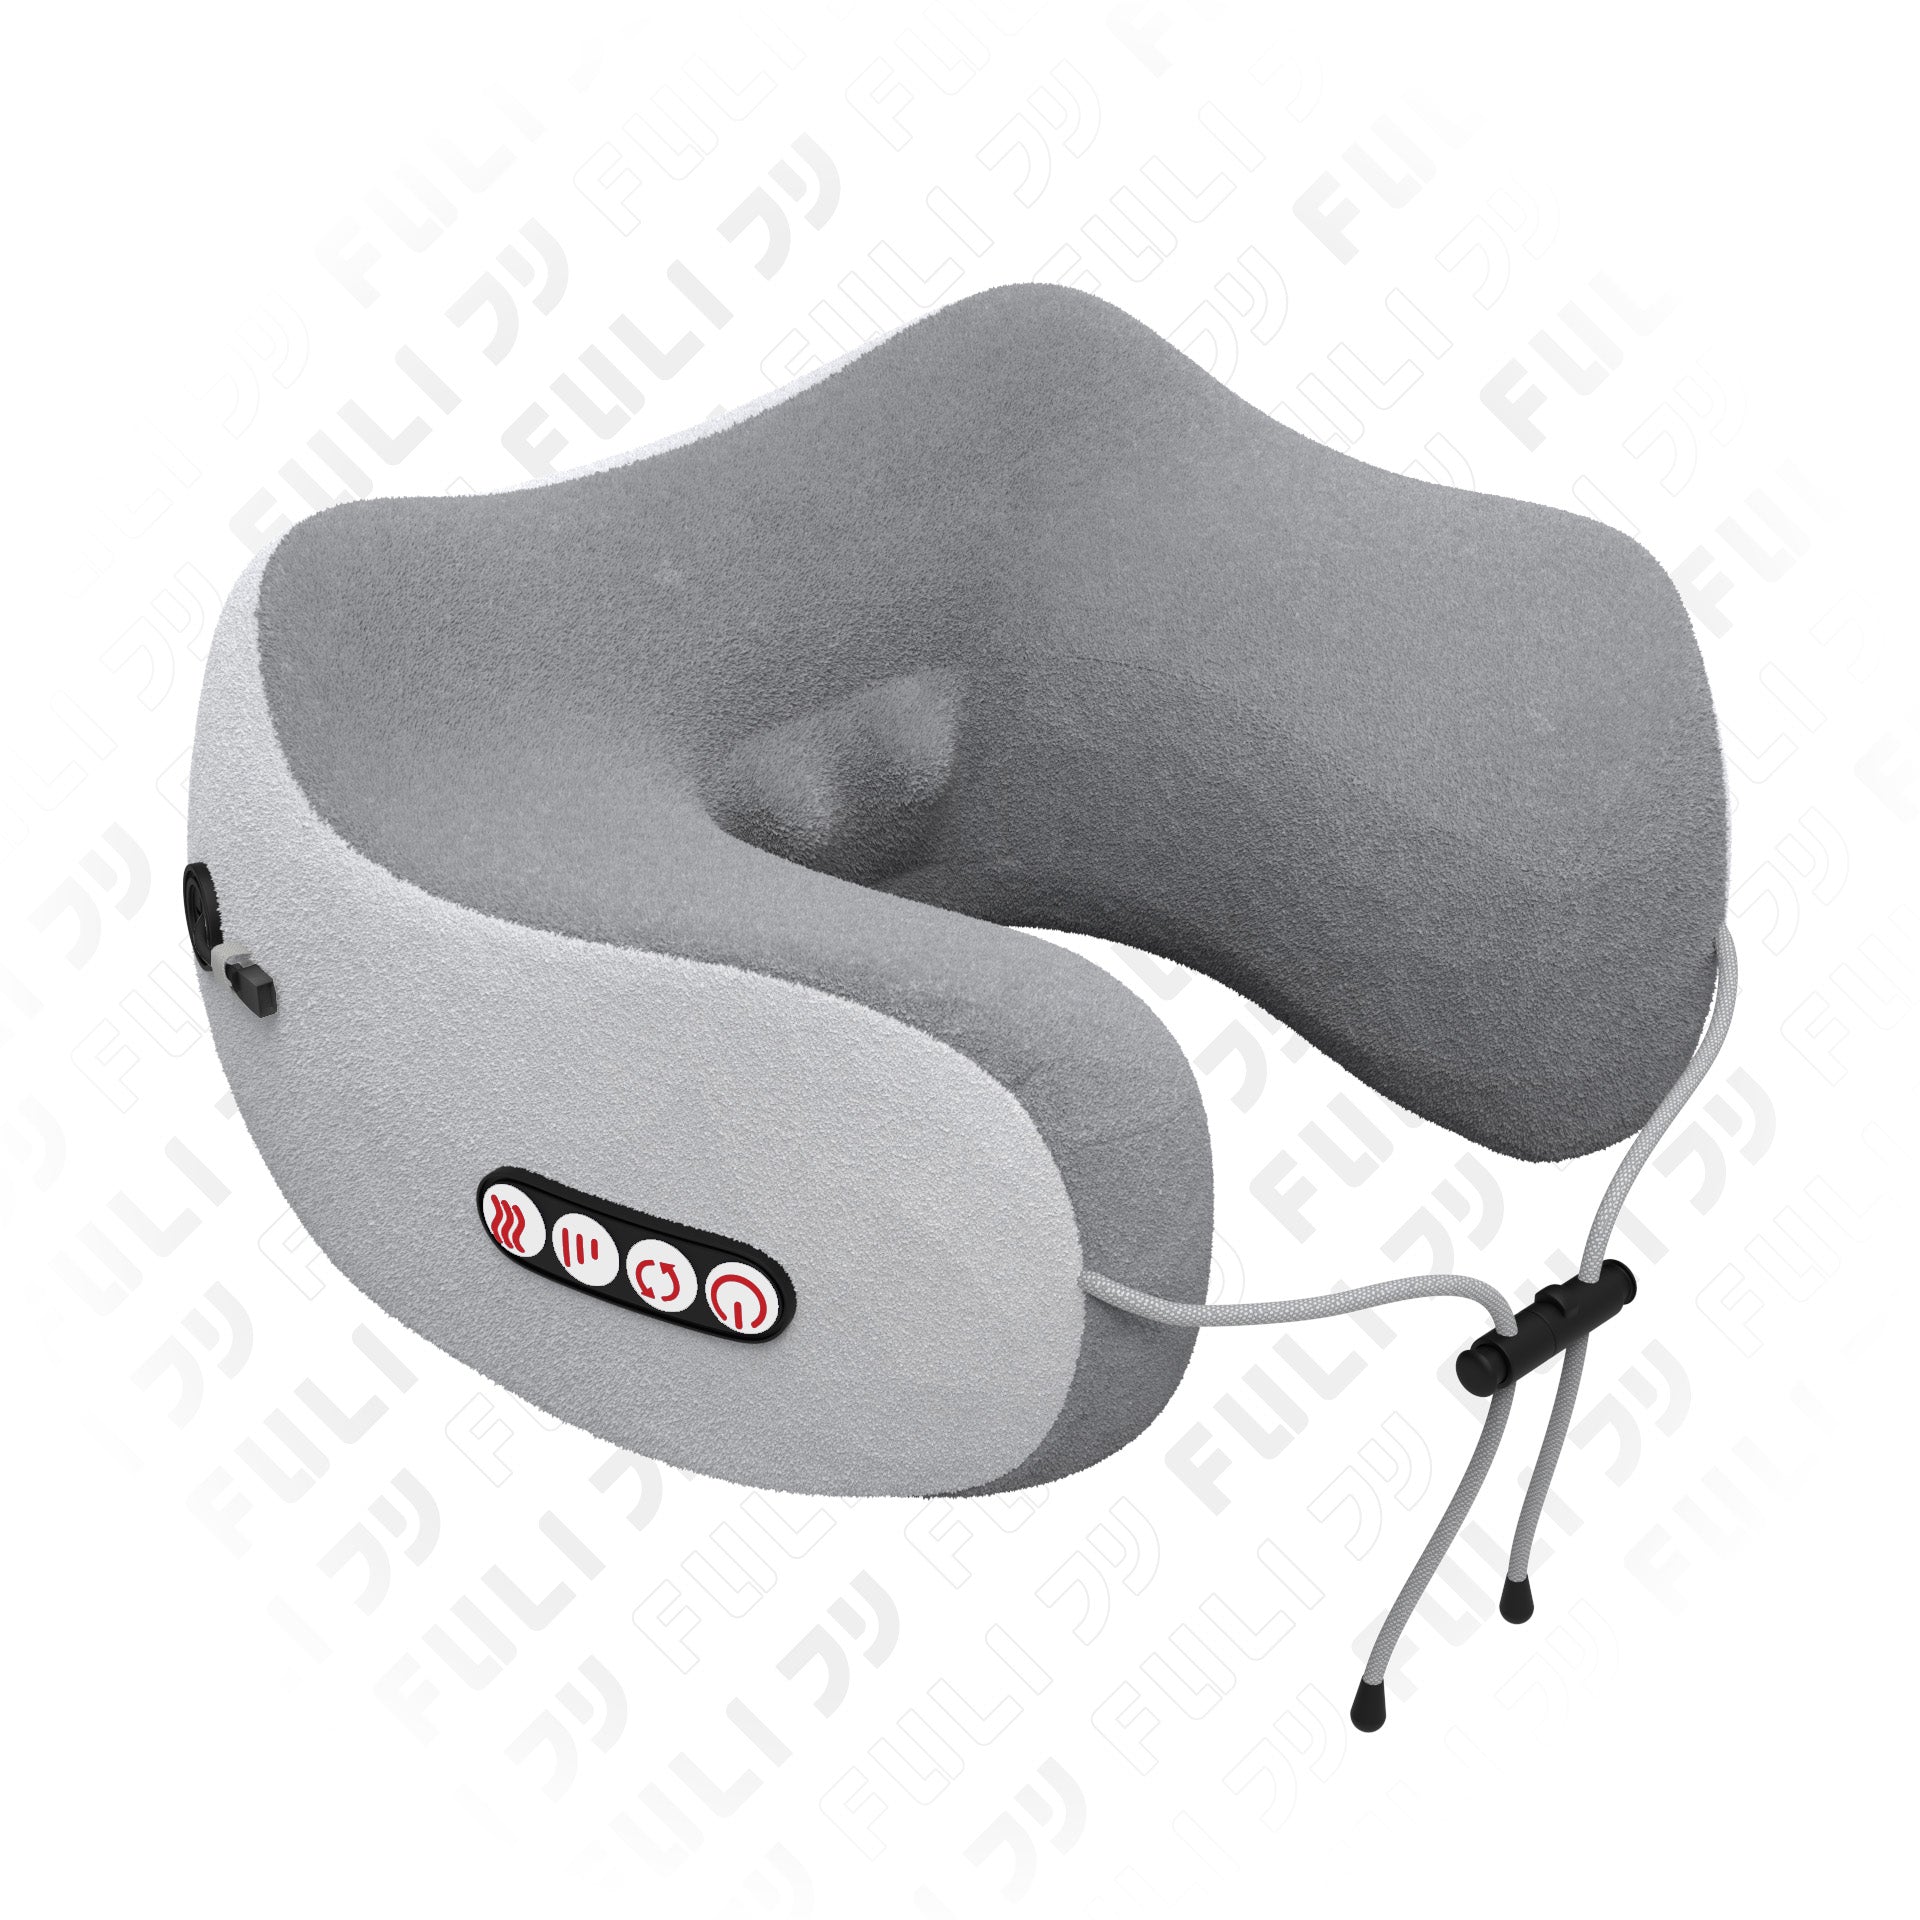 เซตนวดคอบ่าไหล่ฟินทั้งตาและคอ | FULI Neck and Shoulder Massager + FULI Ergo Massage Neck Pillow + FULI Smart Eye Massager